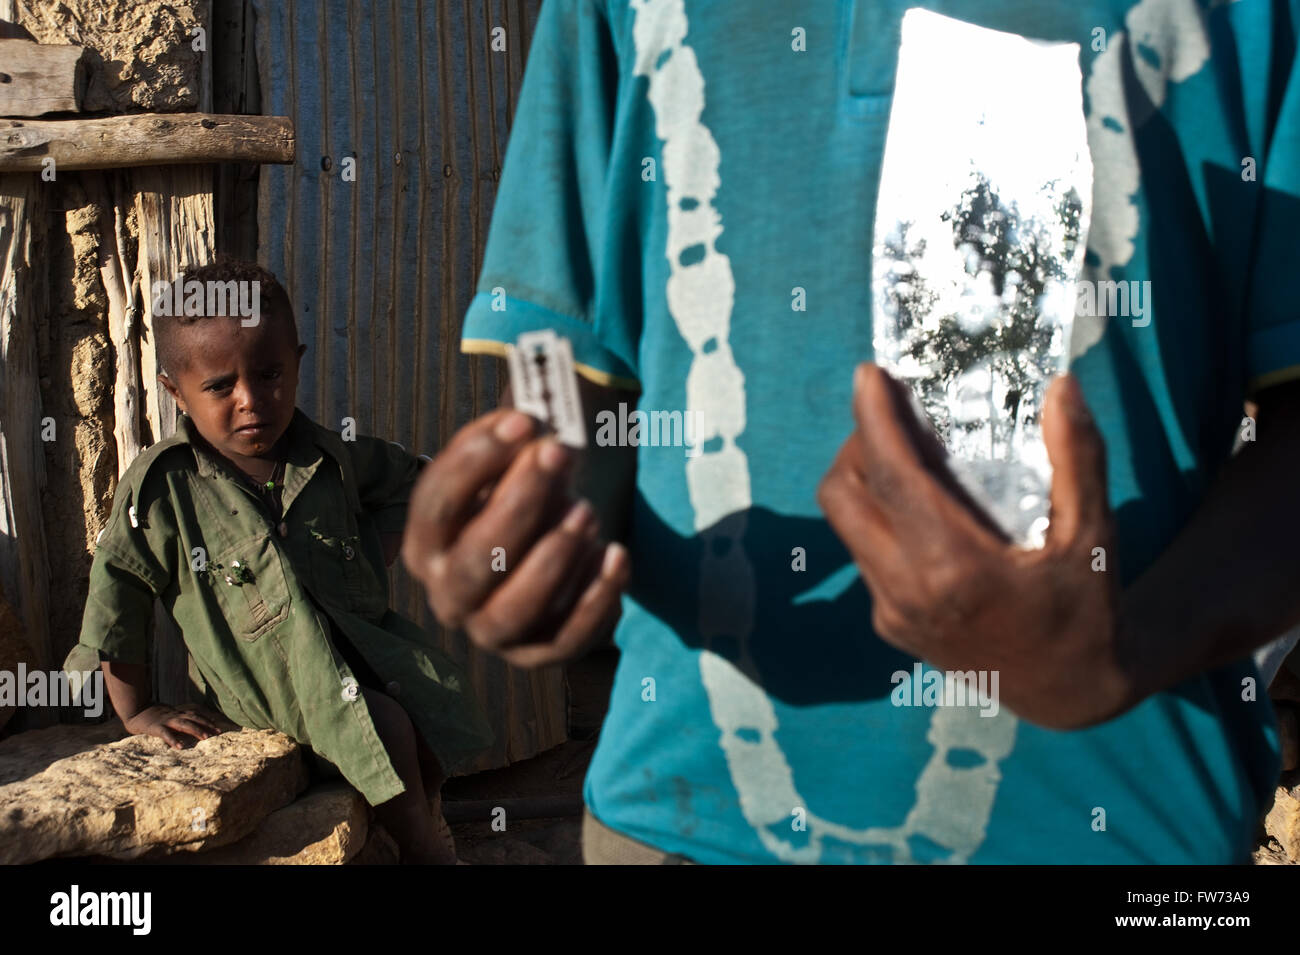 Zeigt ein Agow Man ein Messer und einen Spiegel, mit denen die Kinder Haare (Äthiopien) rasieren Stockfoto